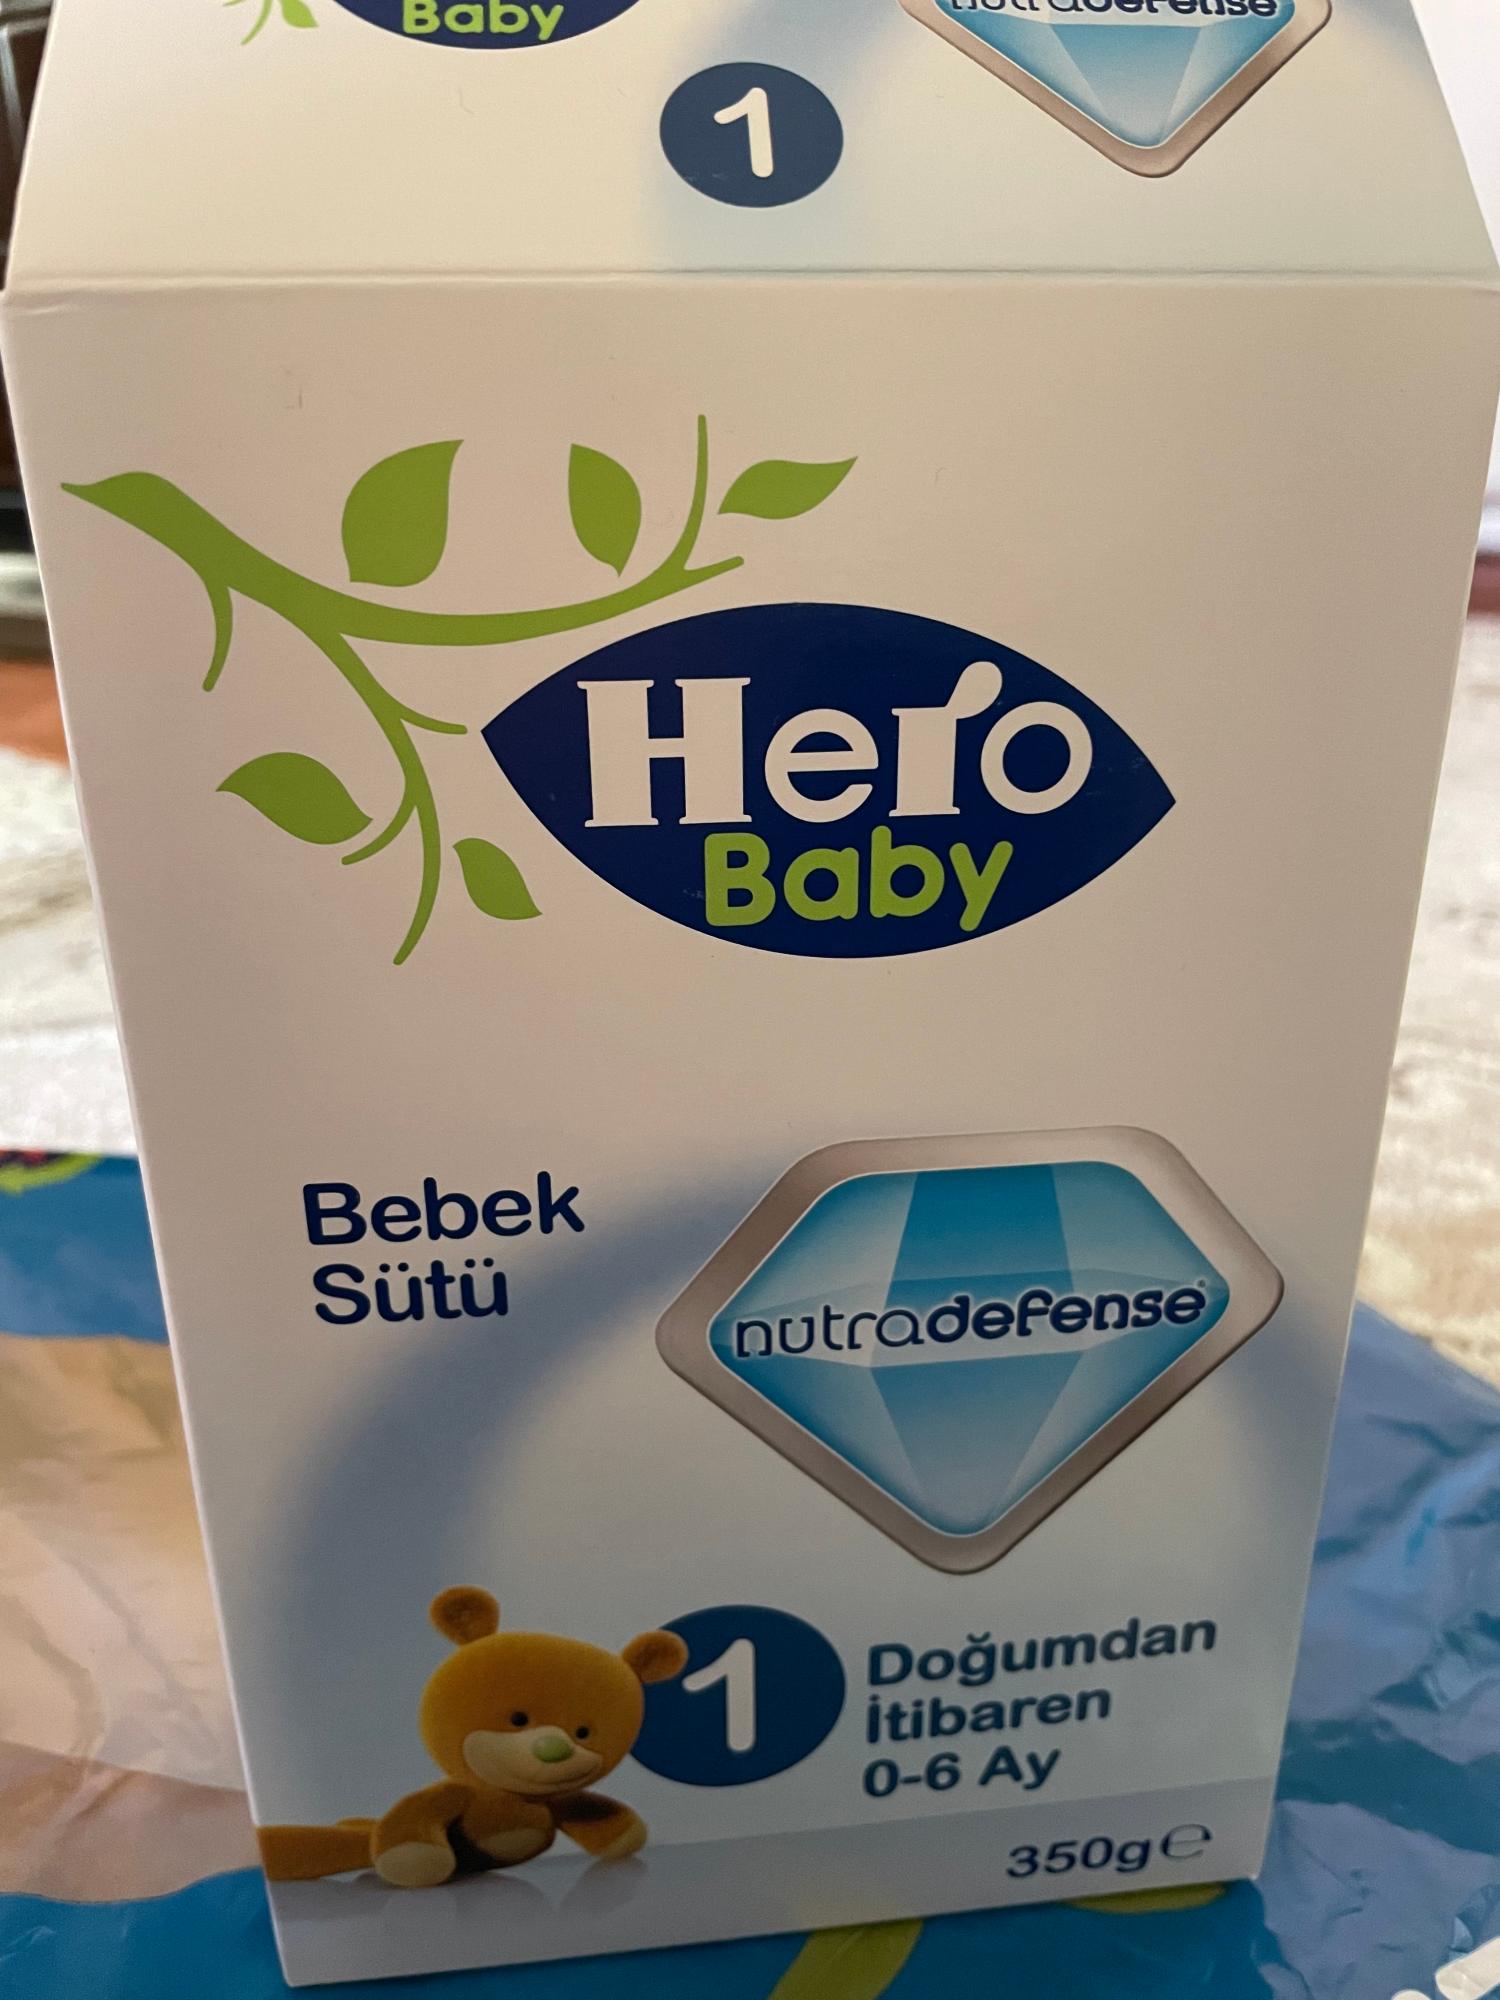 Hero Baby Devam Sütü Aşırı Balık Kokuyor - Şikayetvar